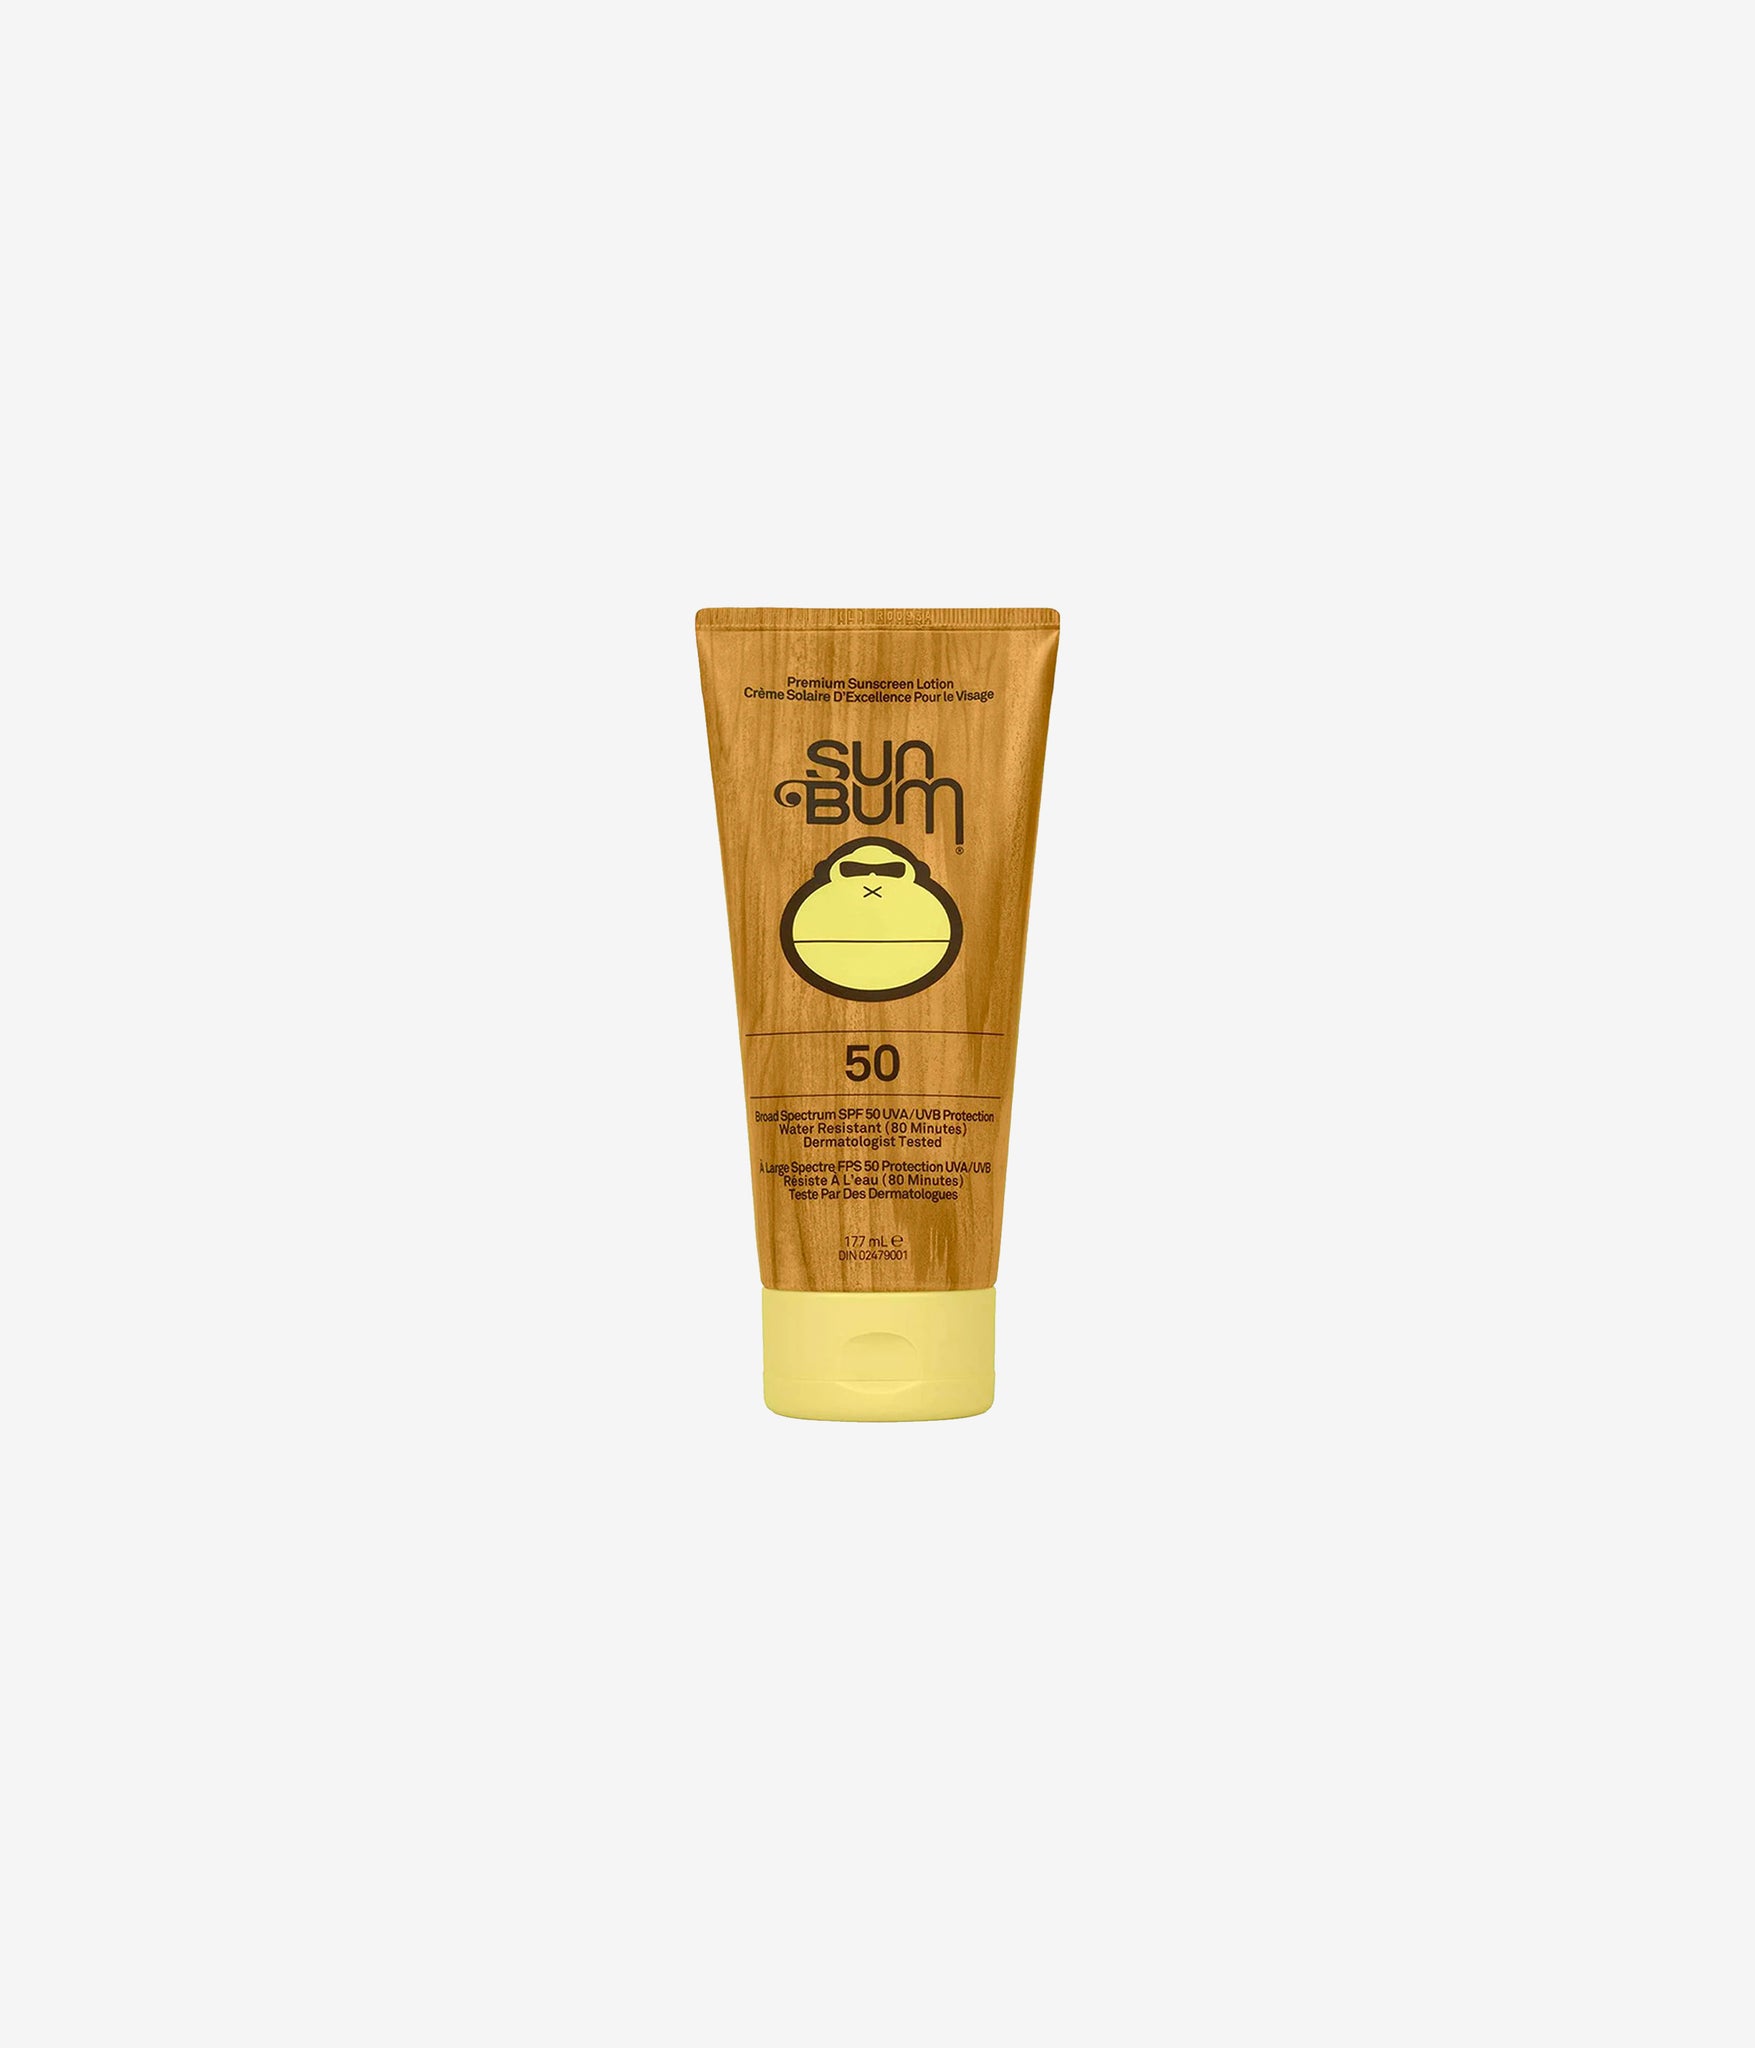 Sun Bum SPF 50 sunscreen lotion